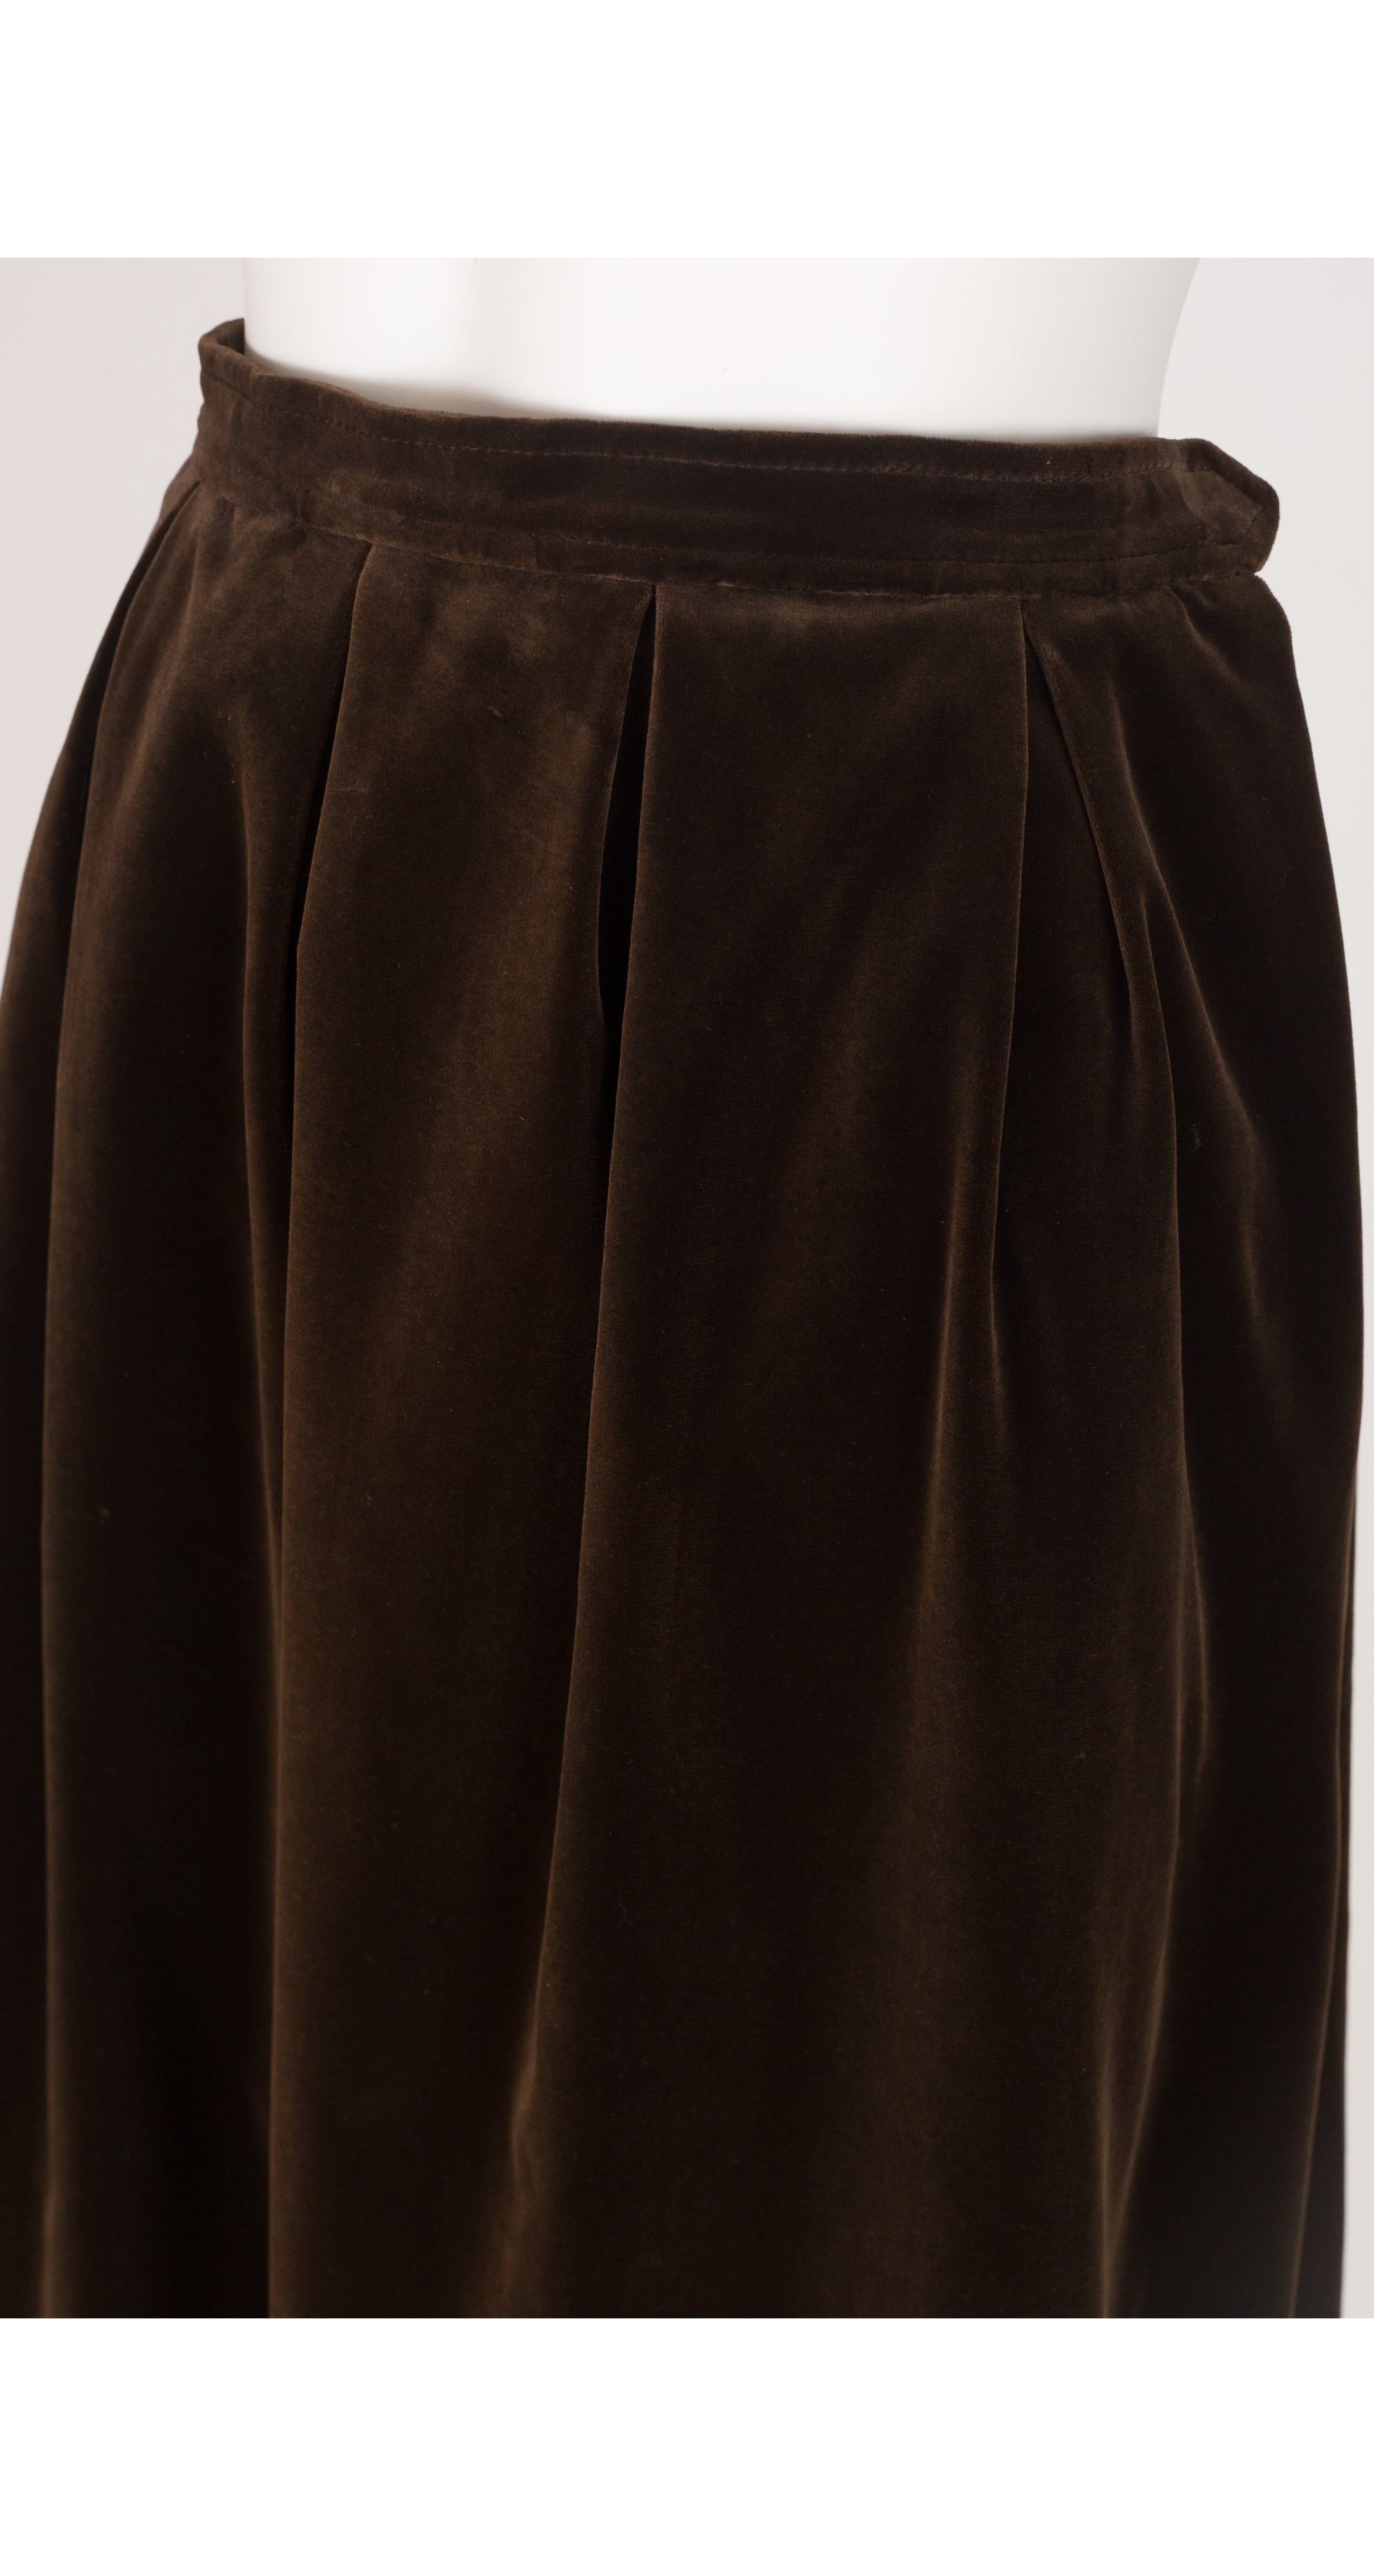 1970s Dark Brown Cotton Velvet Pleated Midi Skirt